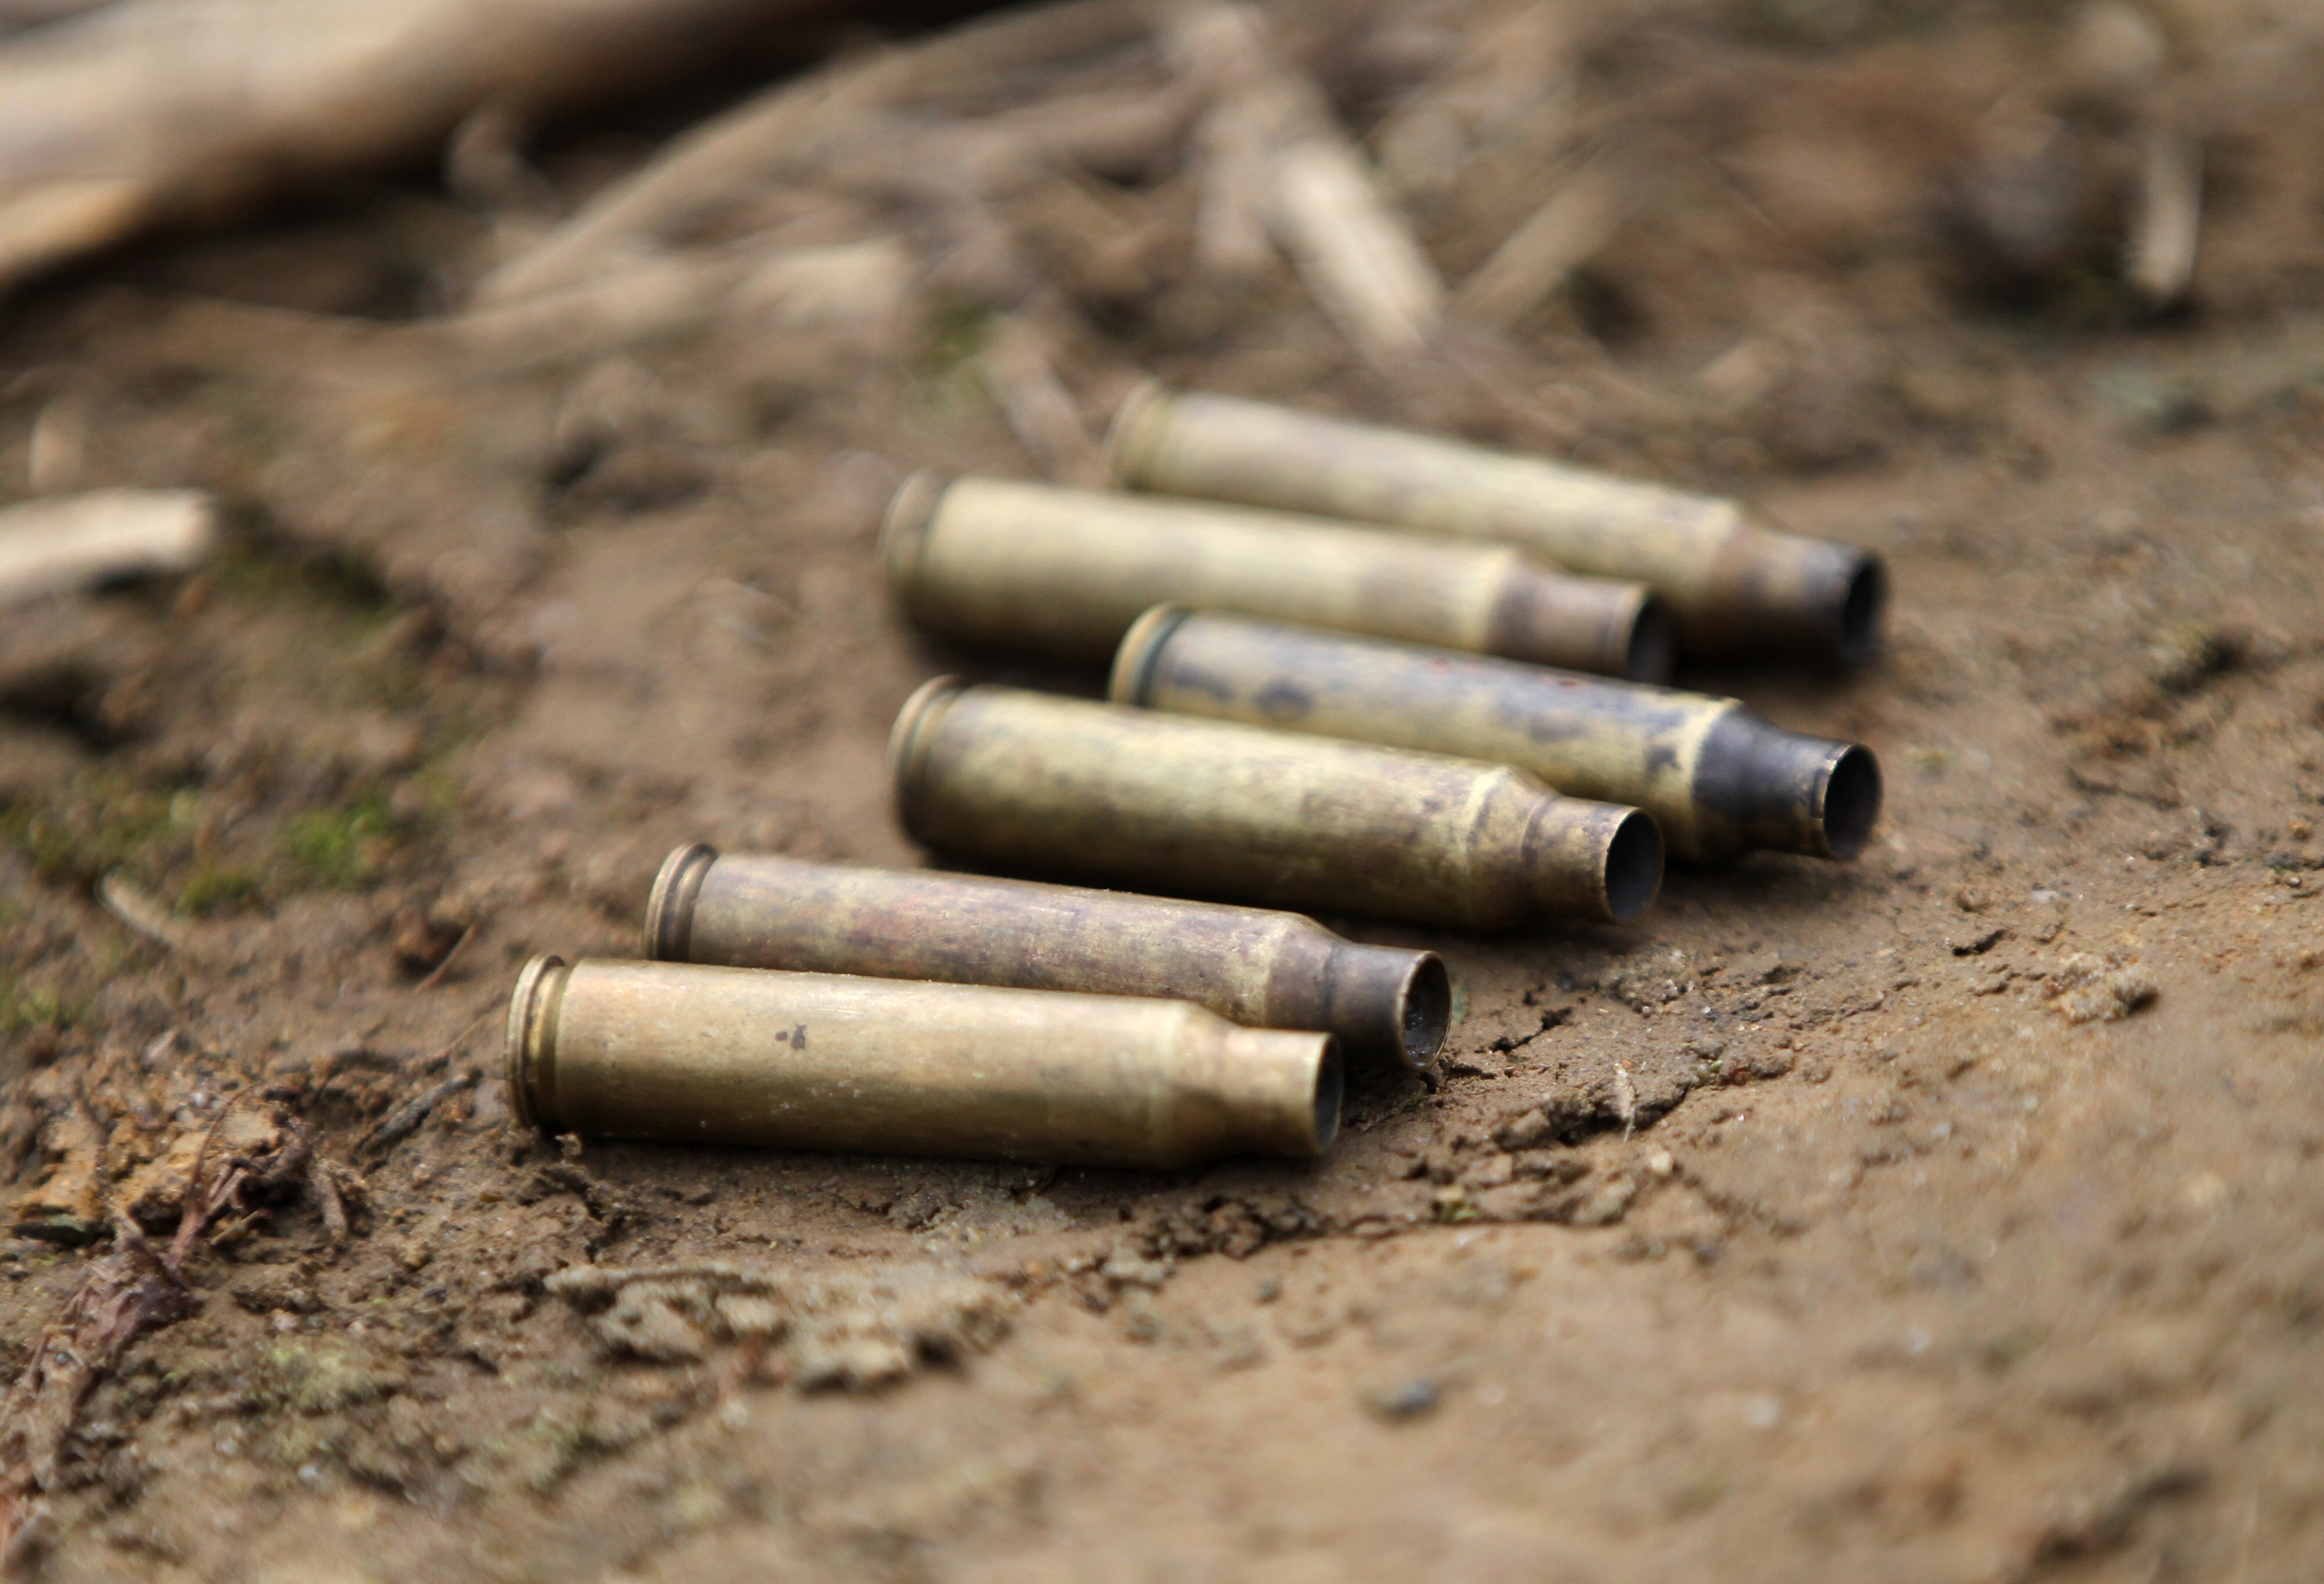 Cuatro personas asesinadas en Buga, Valle del Cauca. Tahir Rivera. EFE/Ernesto Guzmán Jr./Archivo
